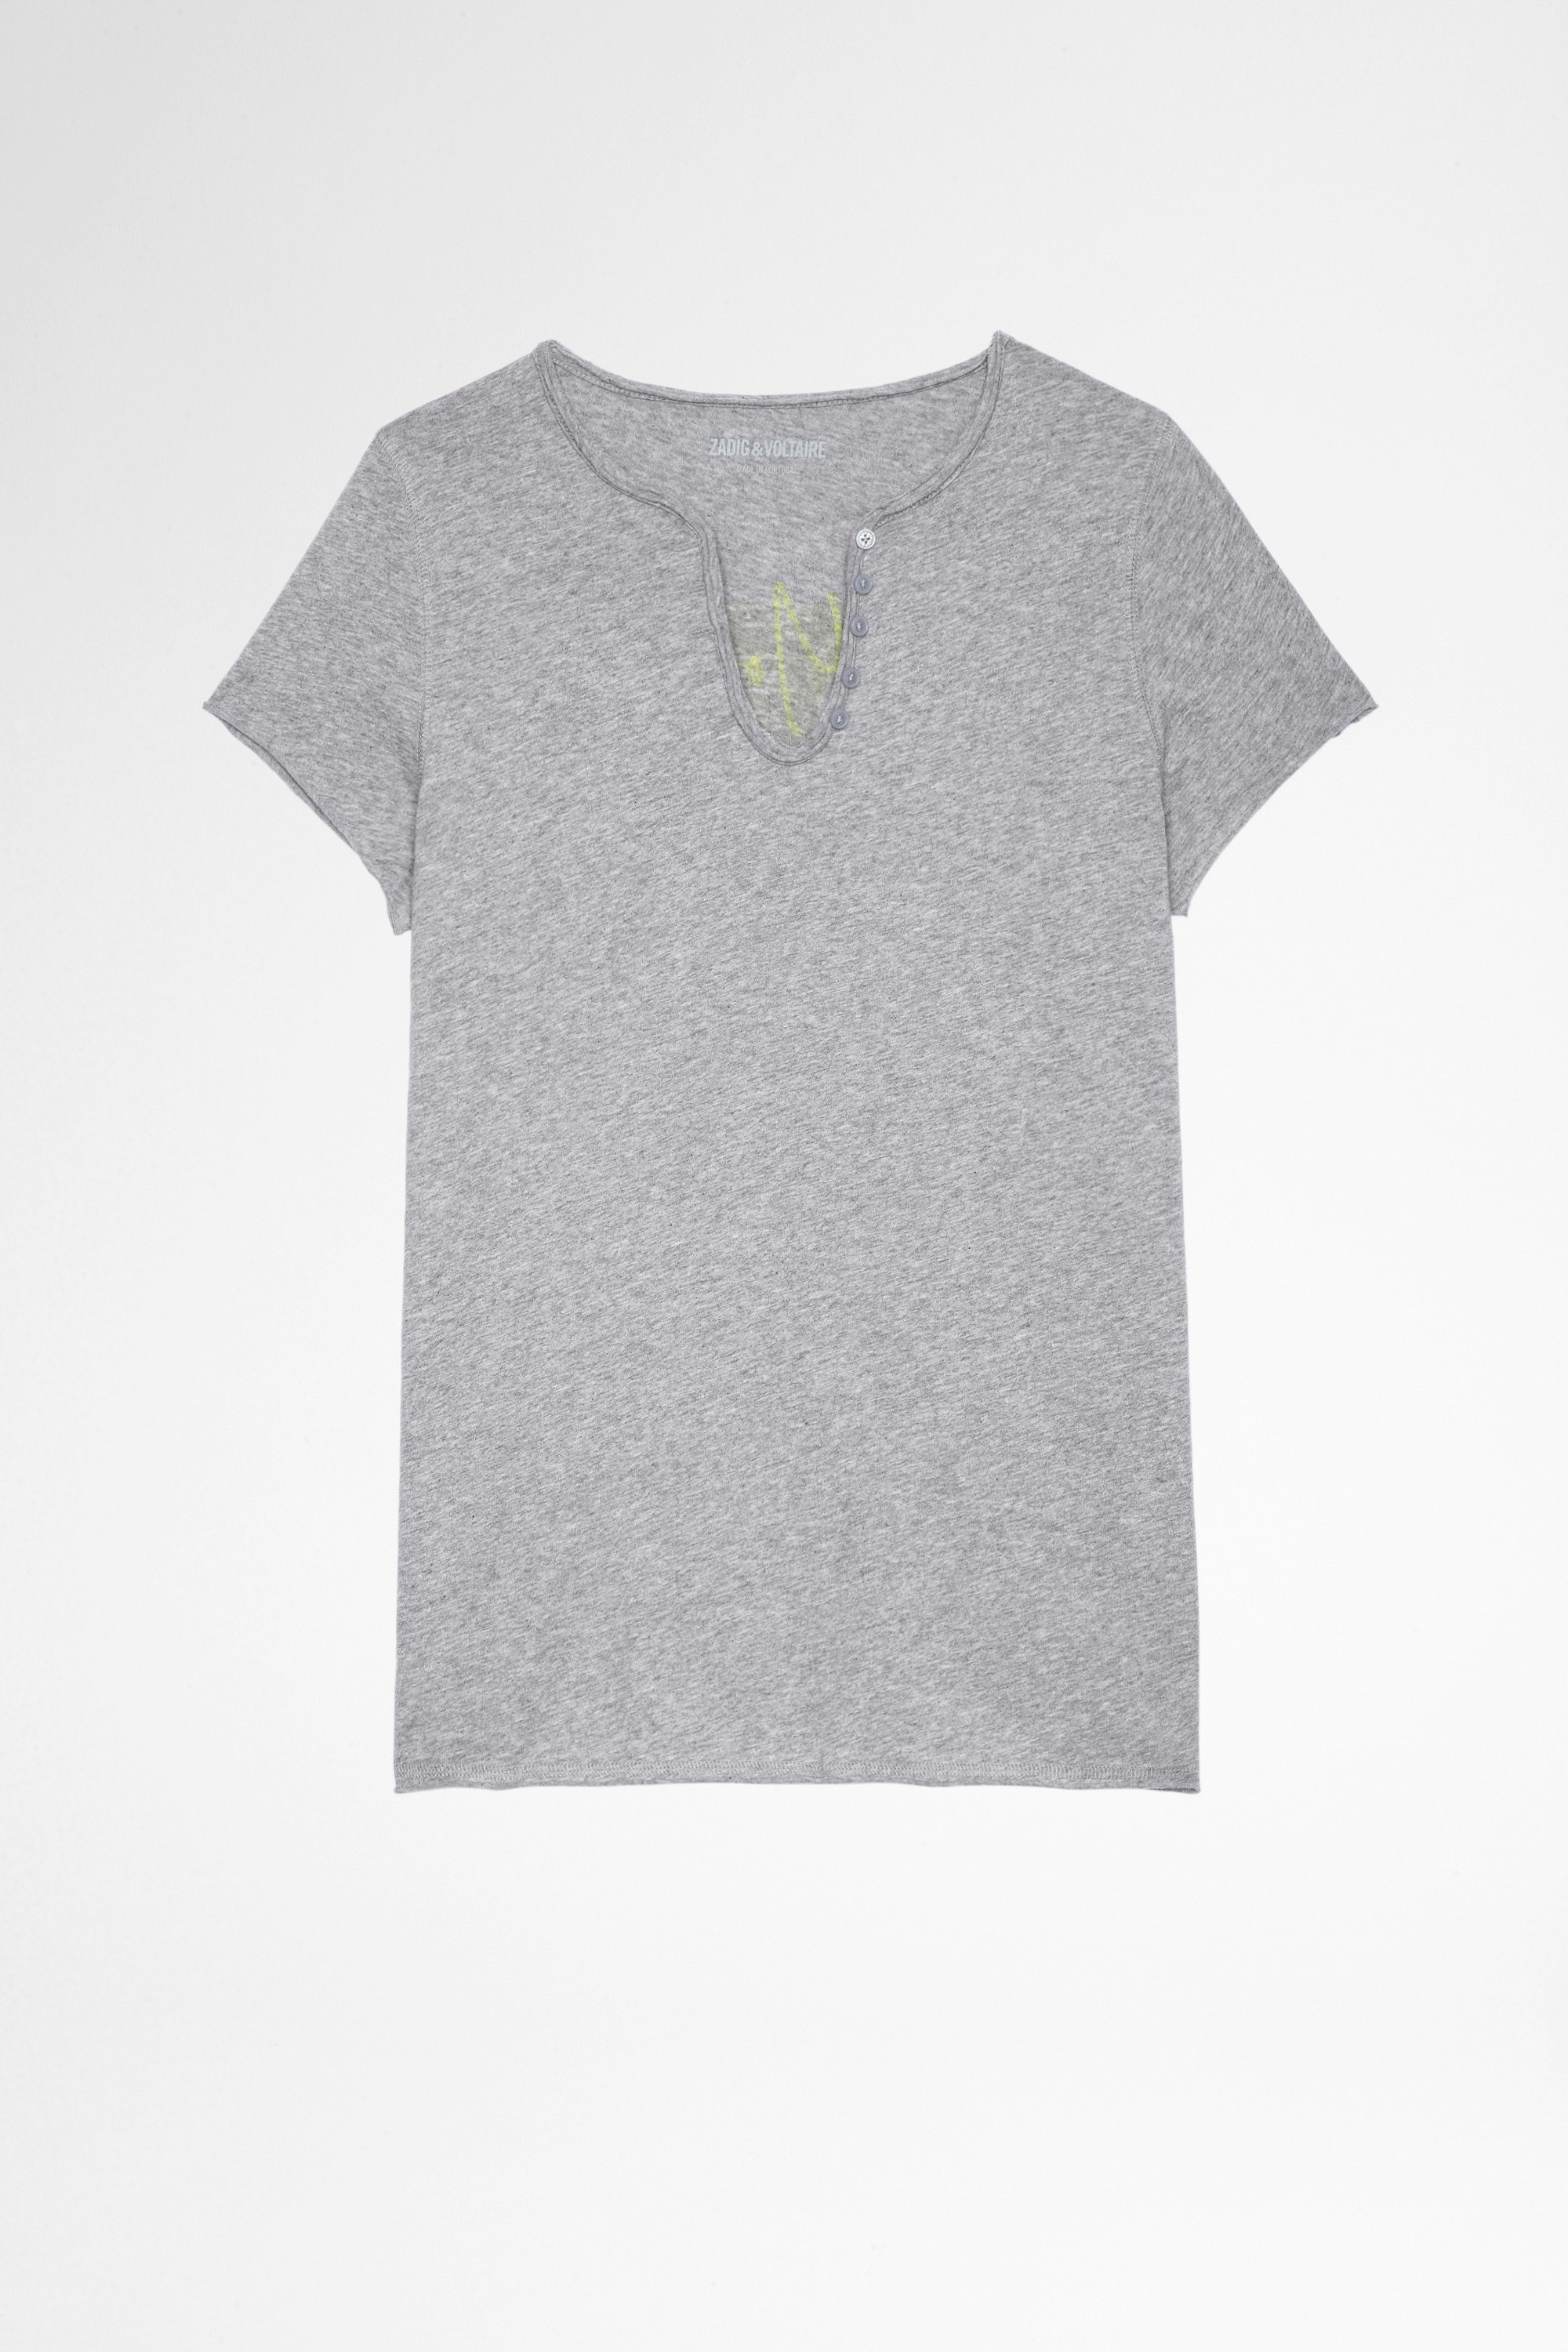 T-Shirt Tunisien Photoprint T-shirt en coton gris à col tunisien et print photo au dos Femme. Fait avec des fibres issues de l’agriculture biologique